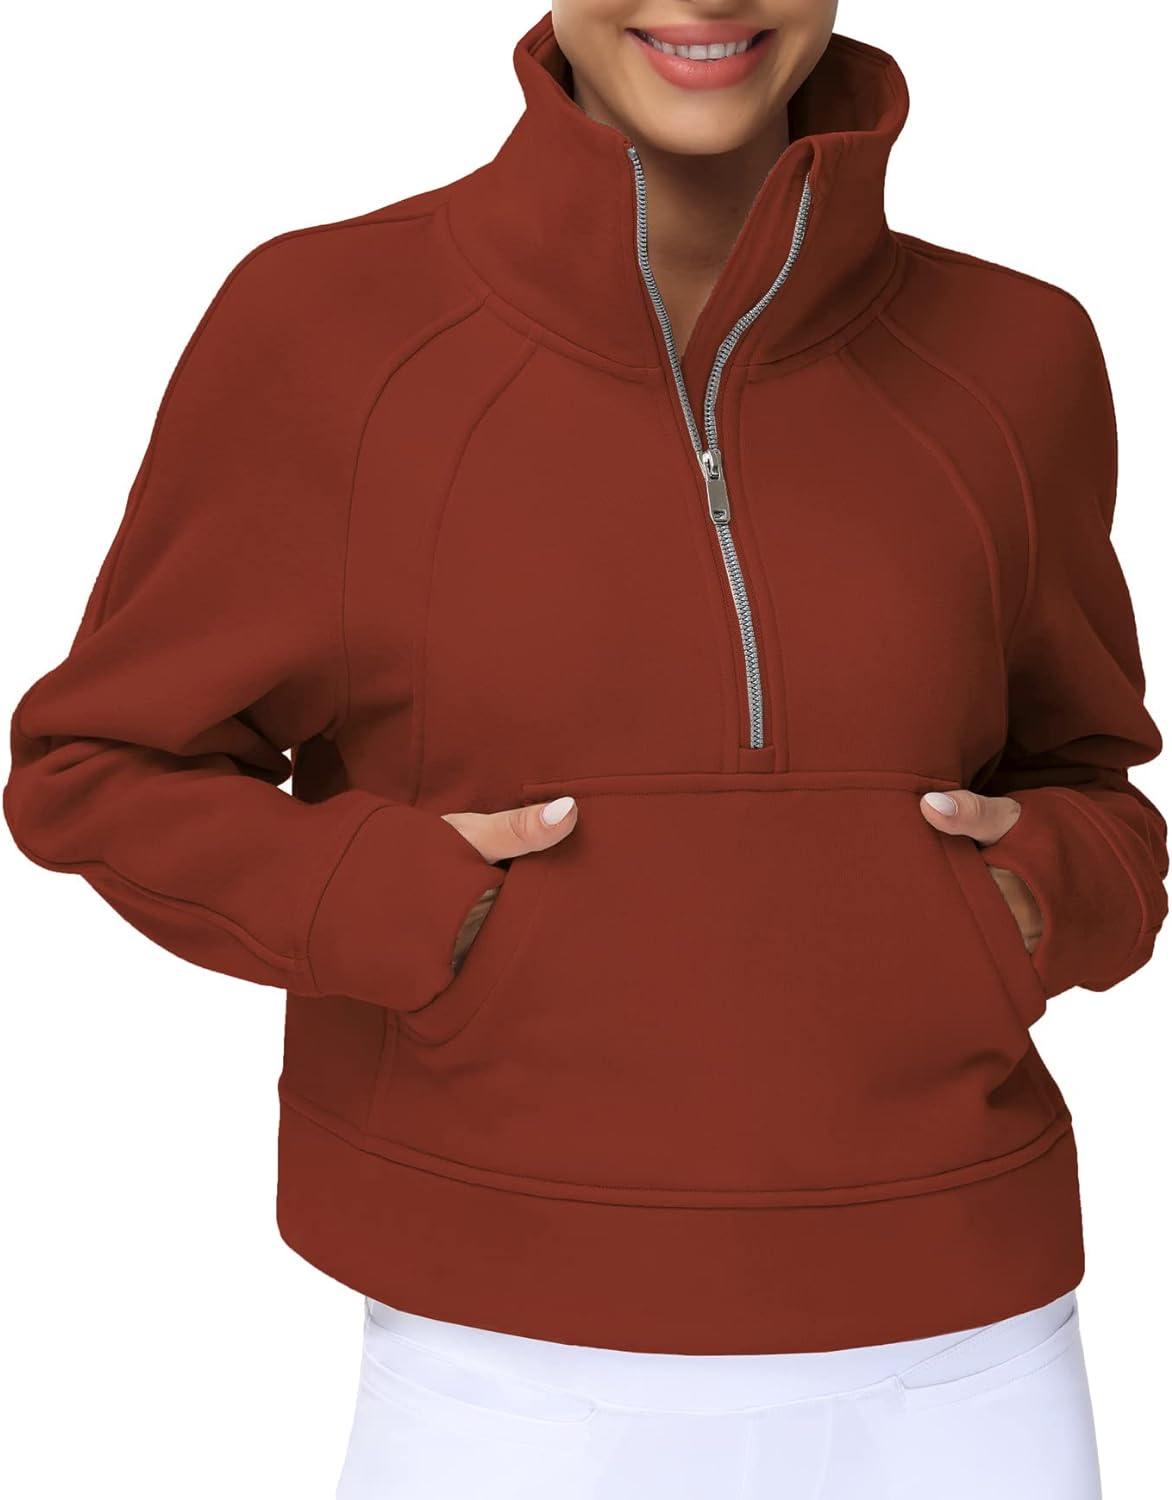 THE GYM PEOPLE Womens' Half Zip Pullover Fleece Stand Collar Crop Sweatshirt  wit